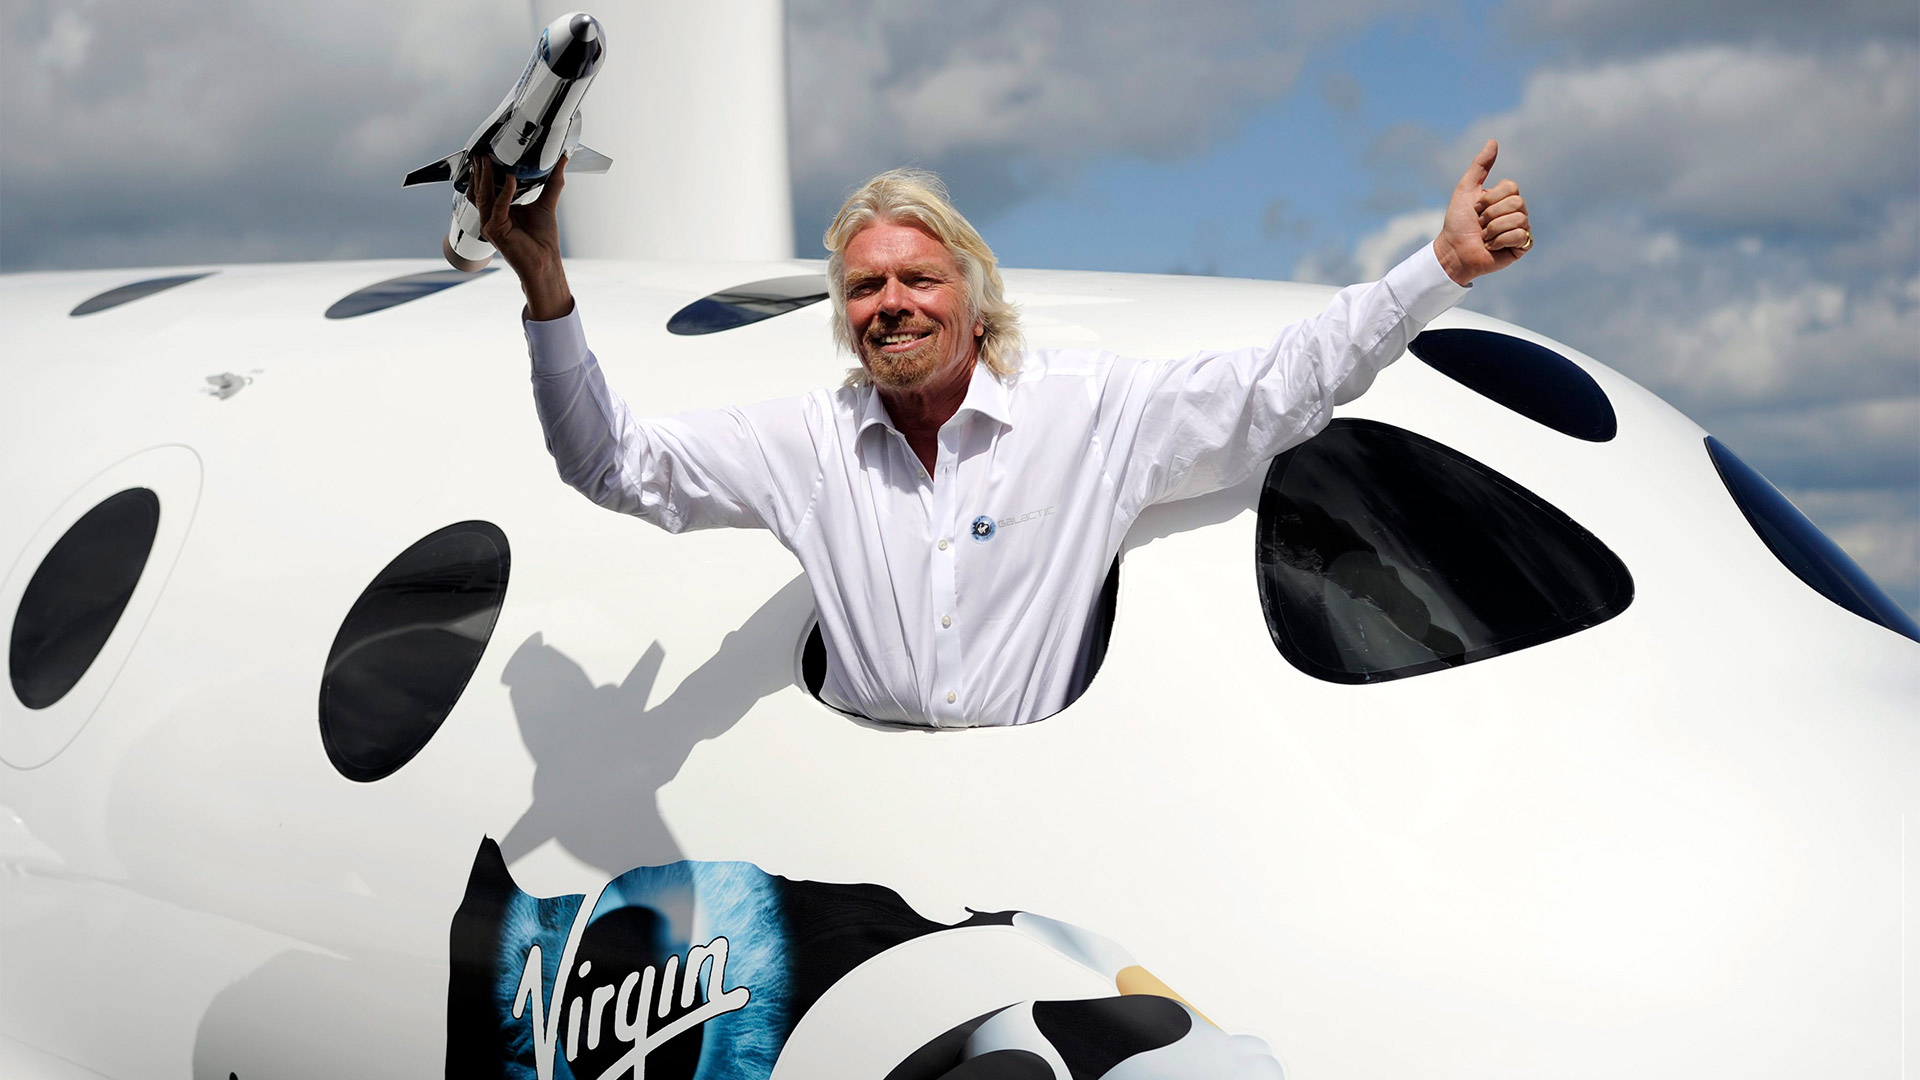 Richard Branson posiert für Fotografen aus dem Virgin Galactic Spaceship | picture alliance / dpa